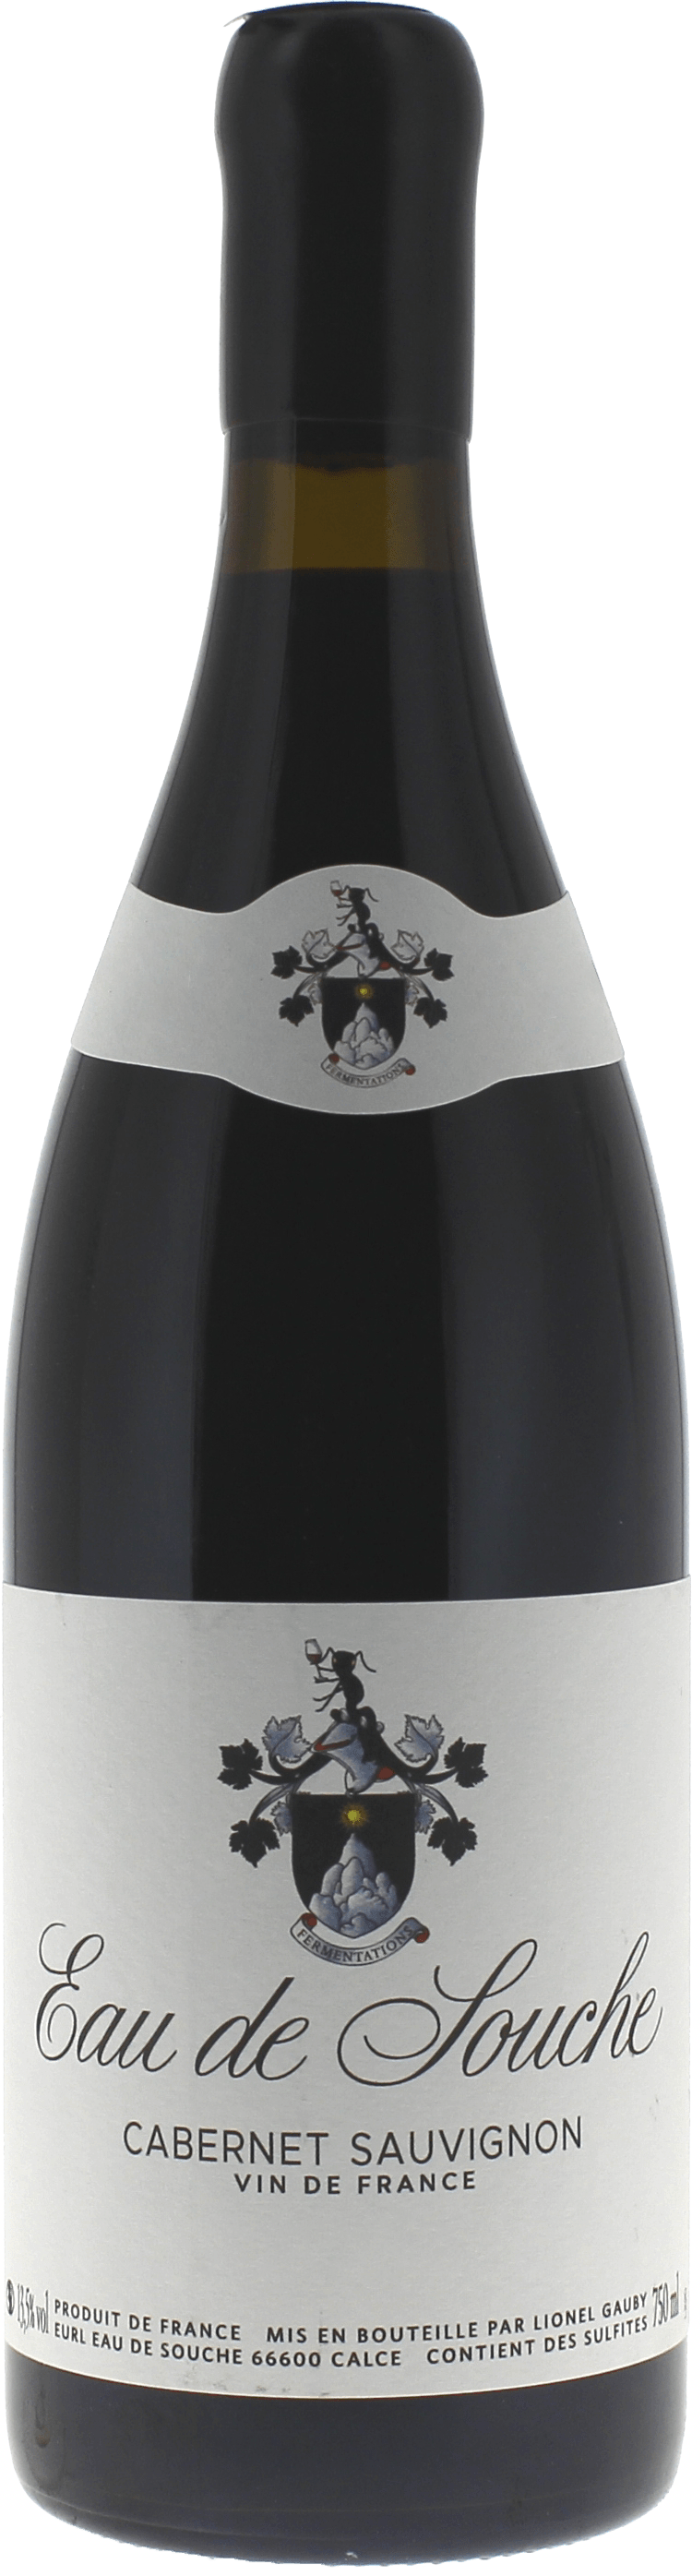 Eau de souche cabernet sauvignon lionel gauby 2020  Vin de France, Languedoc